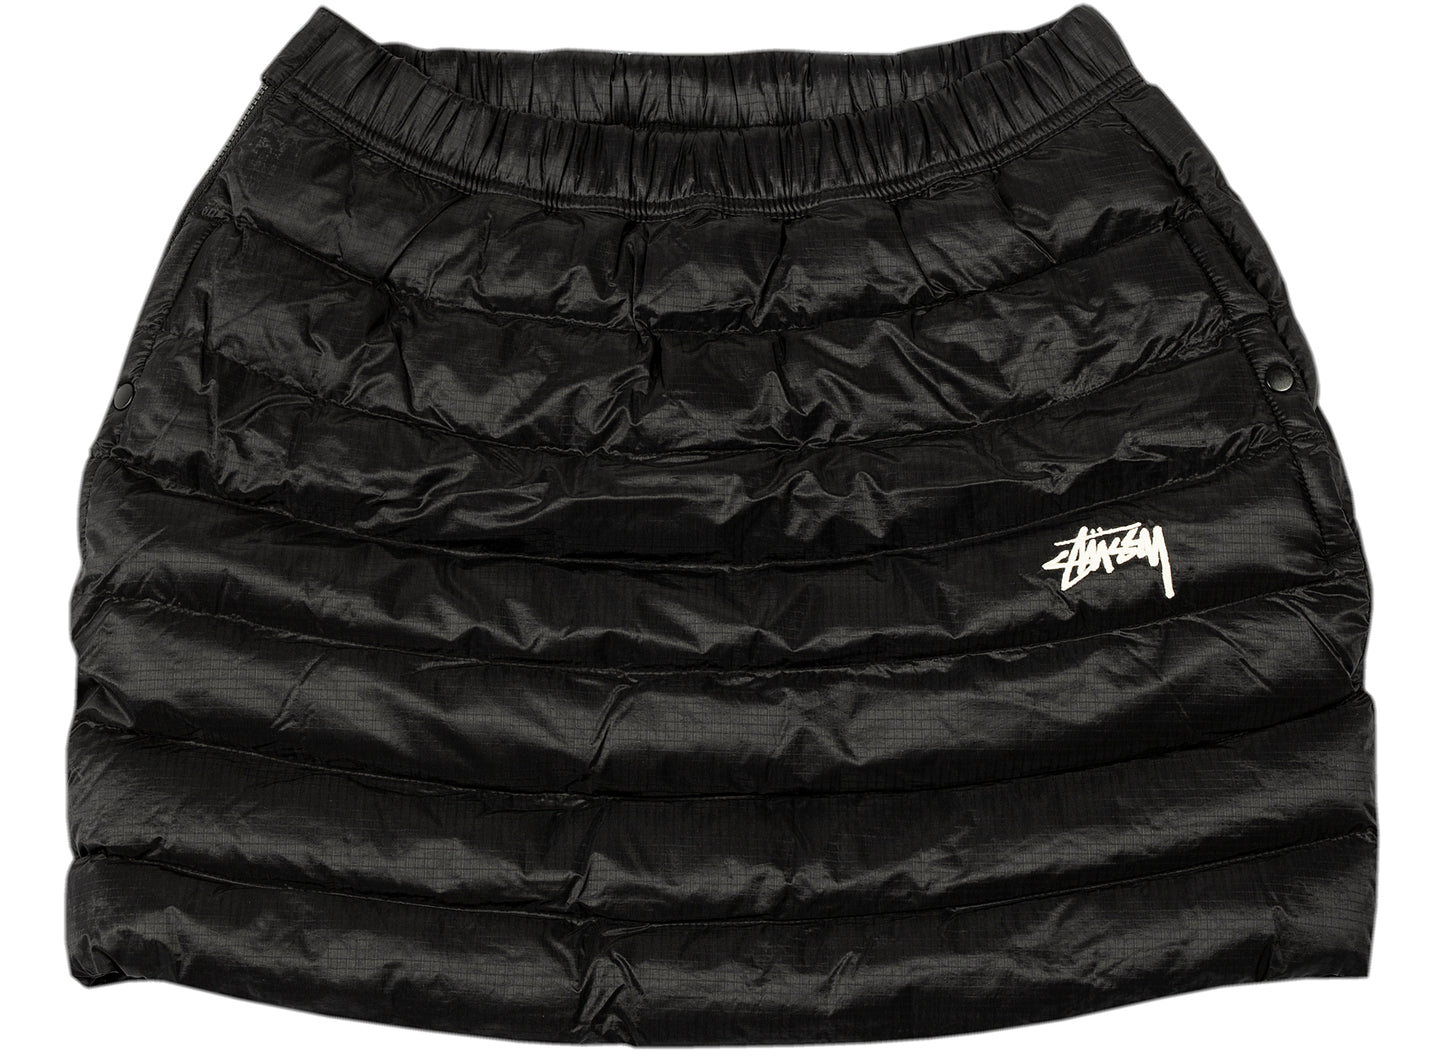 Women's Nike x Stüssy NRG Insulated skirt